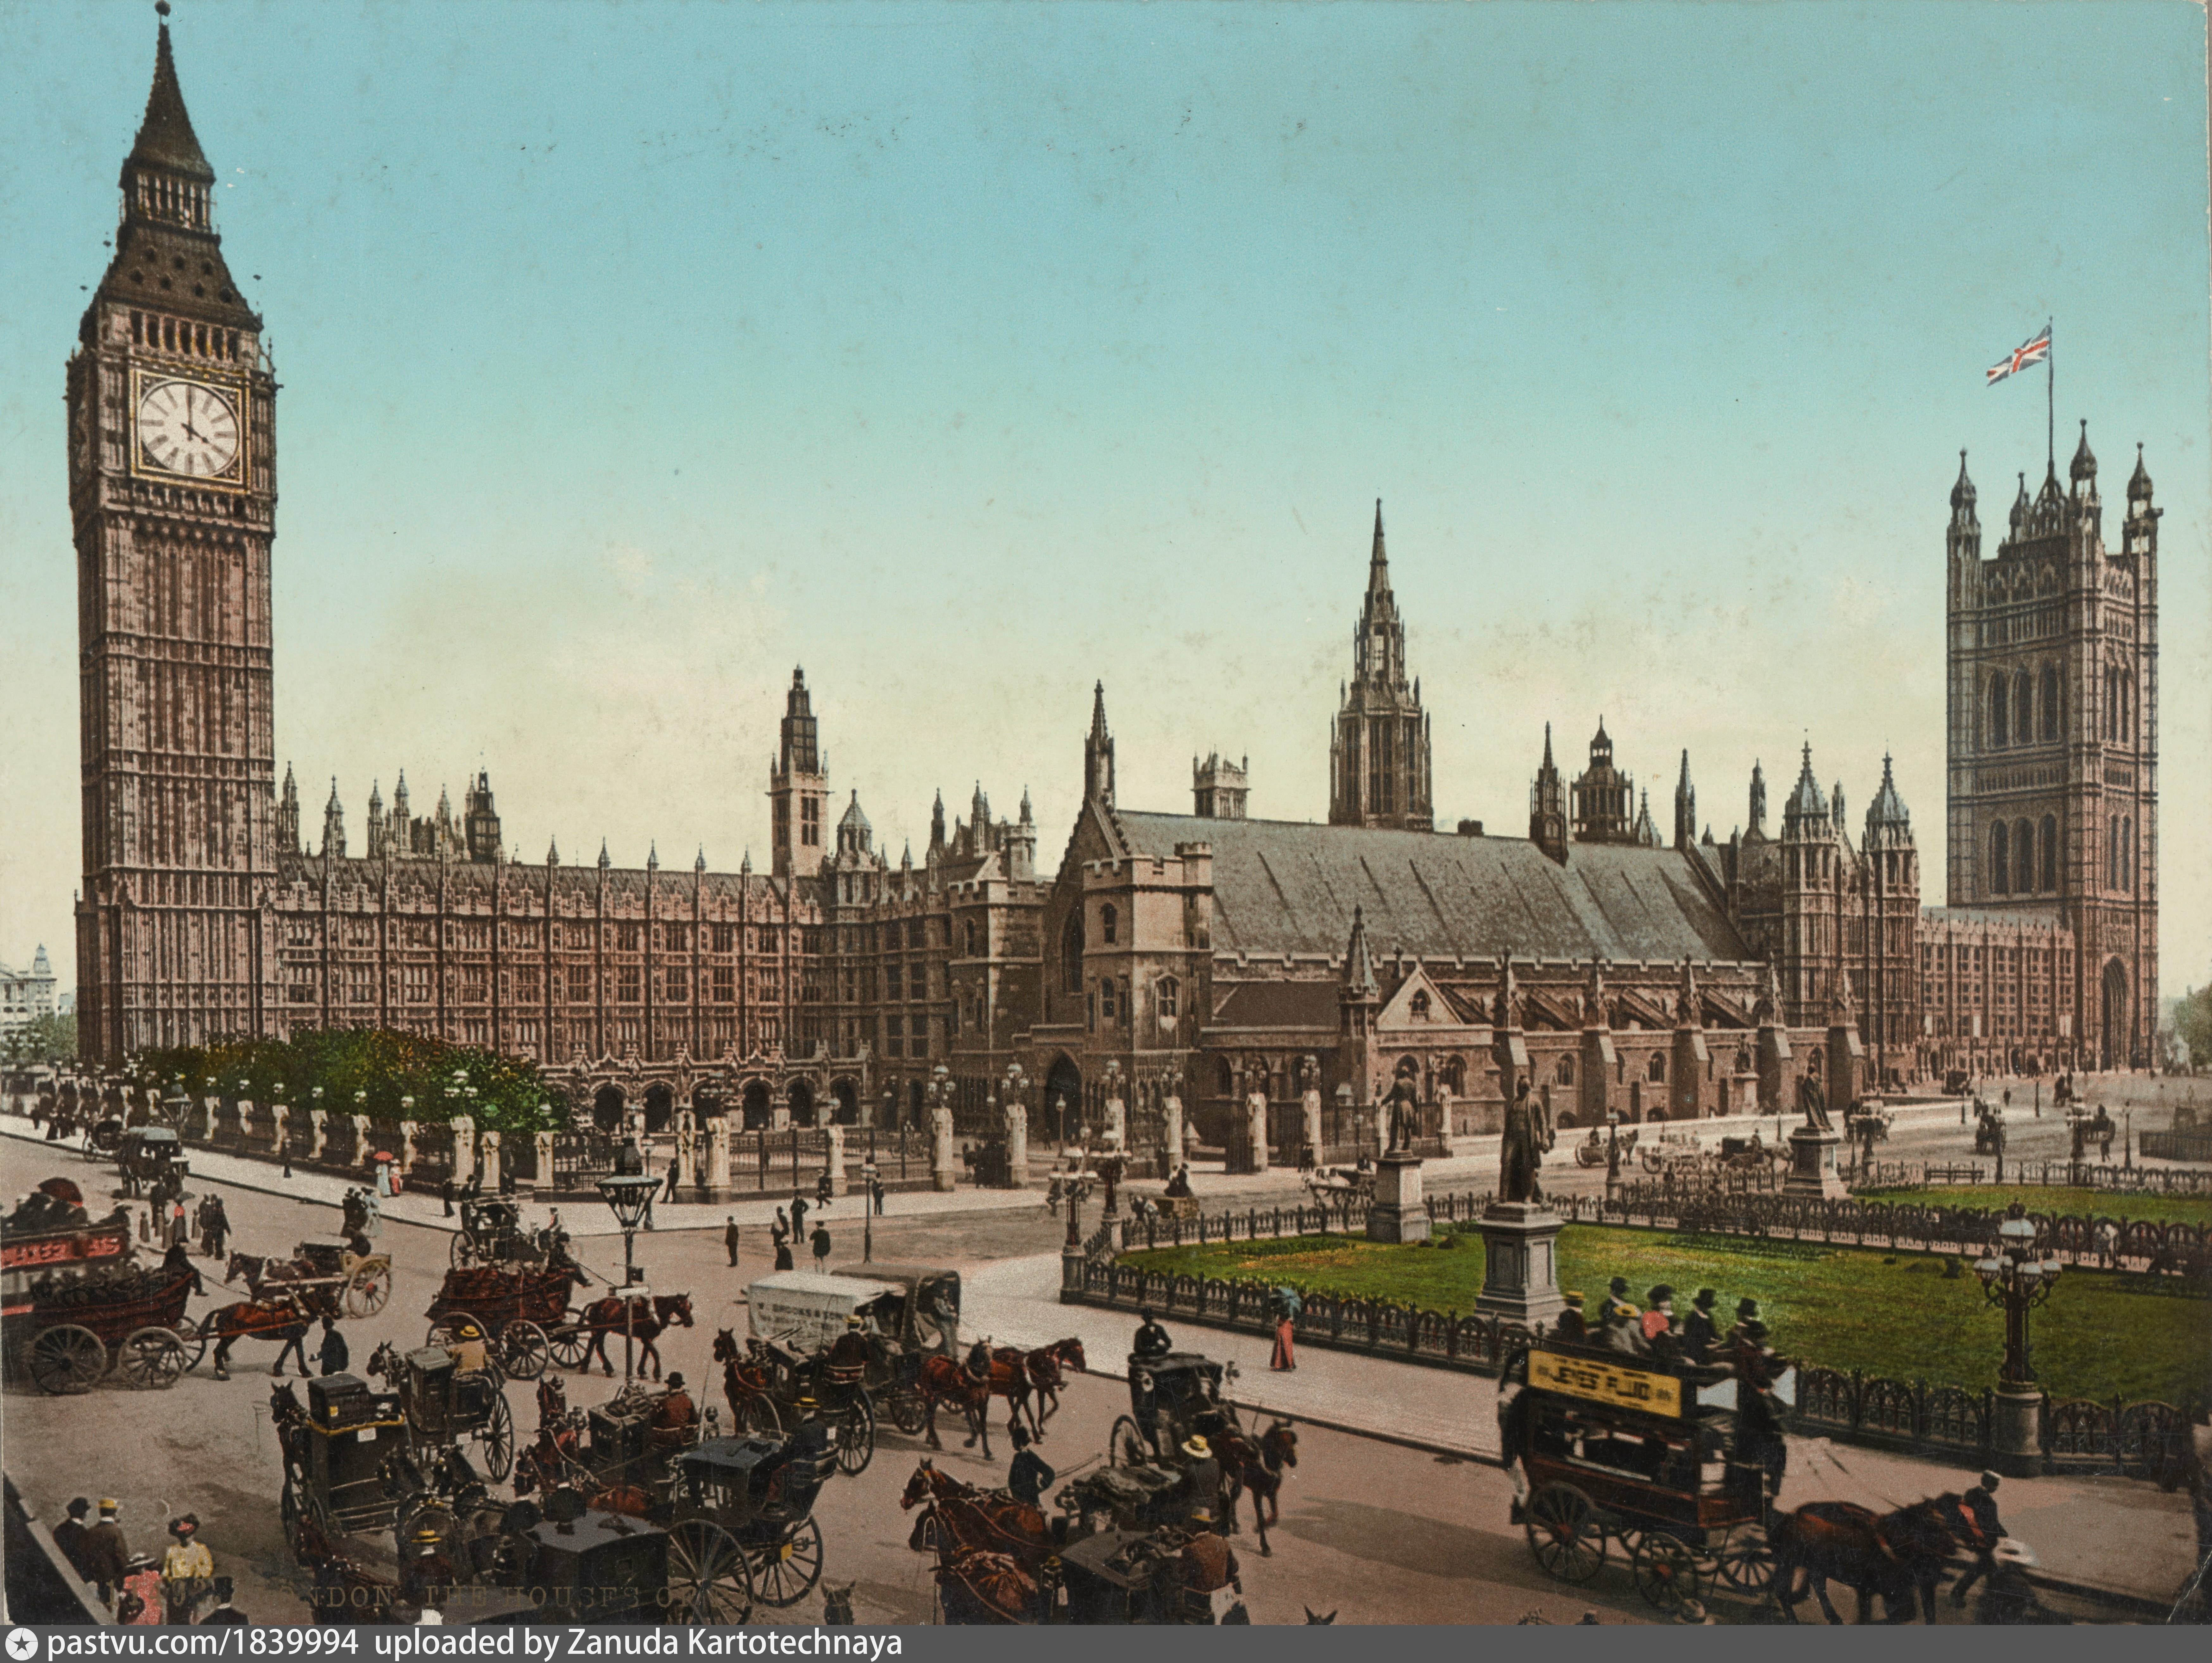 Основан лондон году. Вестминстерский дворец 19 век. Англия 1890 Лондон. Вестминстерский дворец 16 век. Вестминстерский дворец Лондон Викторианская эпоха.